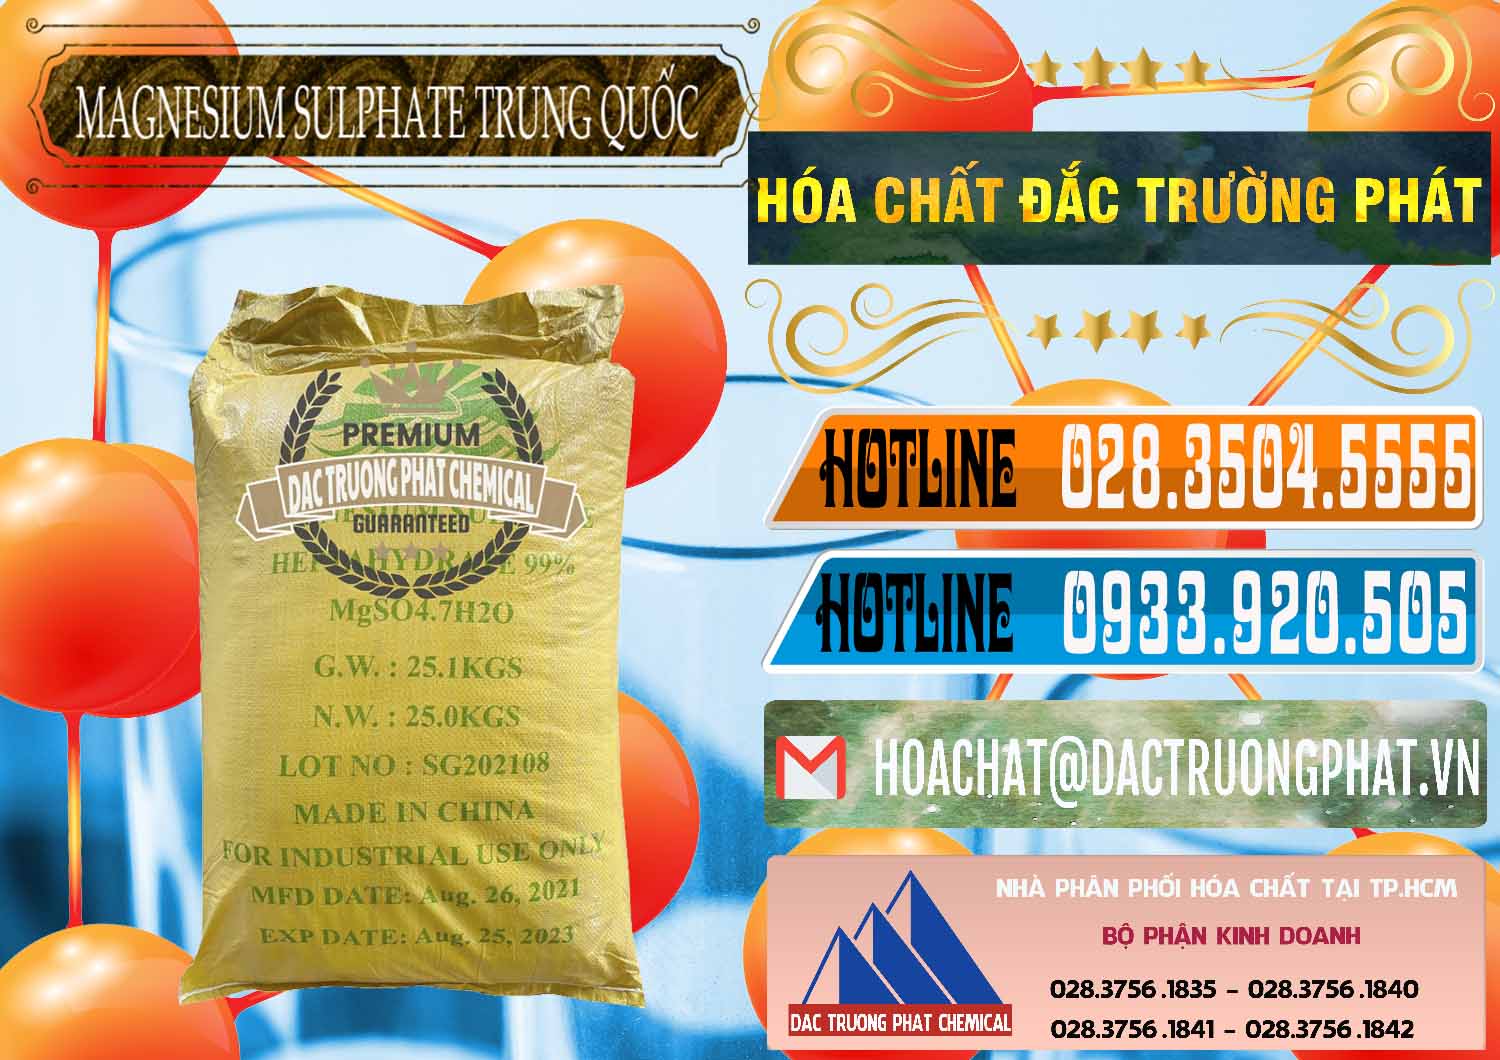 Cty bán - cung ứng MGSO4.7H2O – Magnesium Sulphate Heptahydrate 99% Trung Quốc China - 0440 - Công ty chuyên cung cấp và bán hóa chất tại TP.HCM - stmp.net